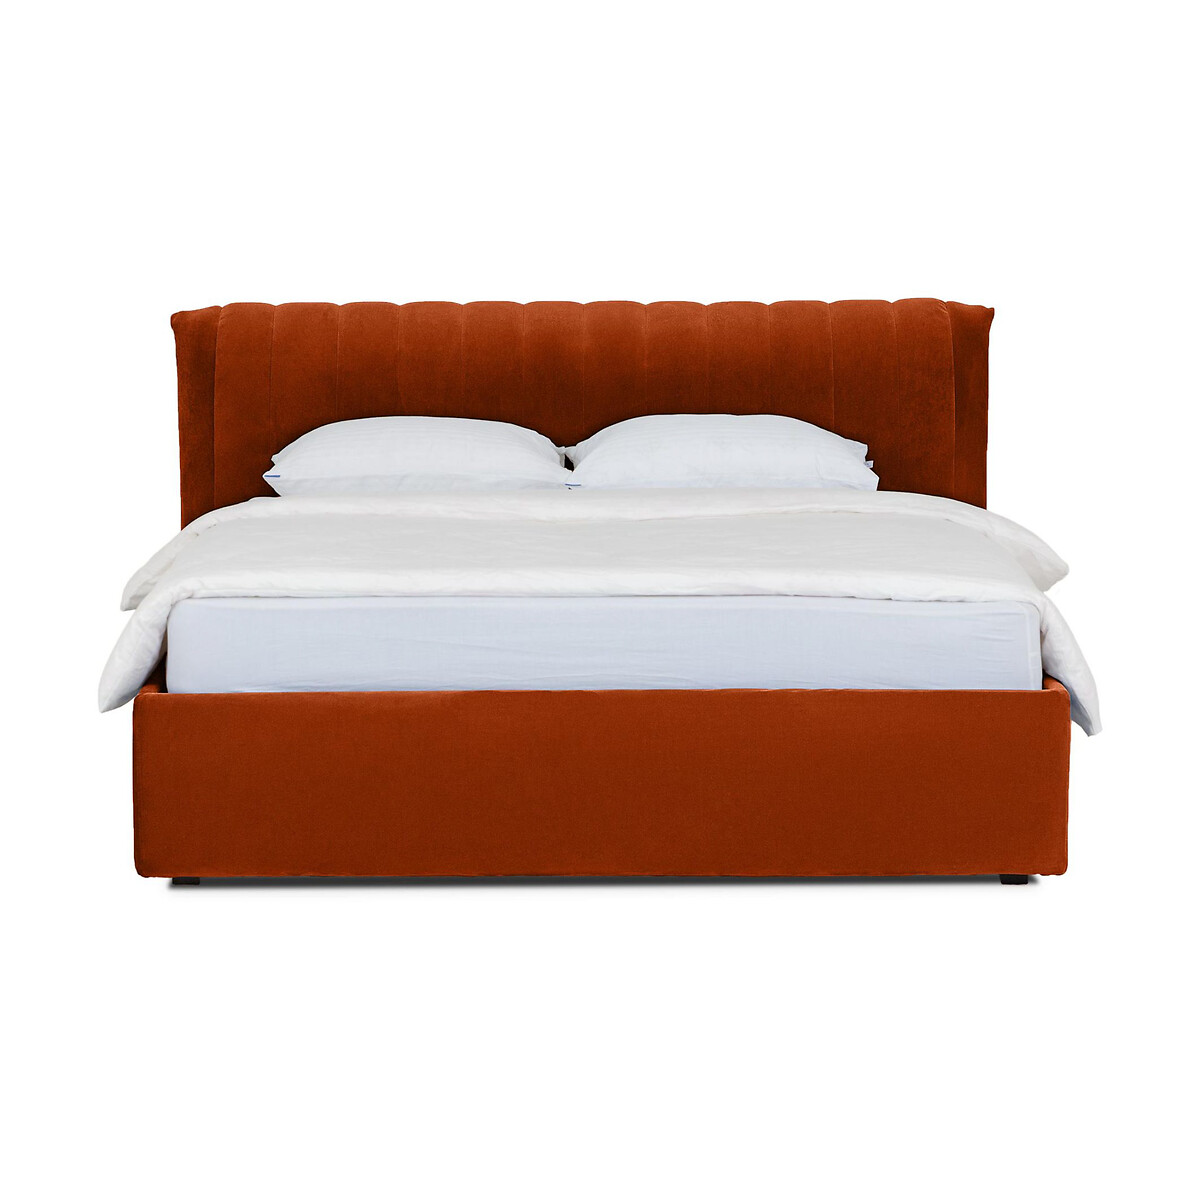 Кровать Queen Anastasia Lux 160 x 200 см оранжевый LaRedoute, размер 160 x 200 см - фото 2